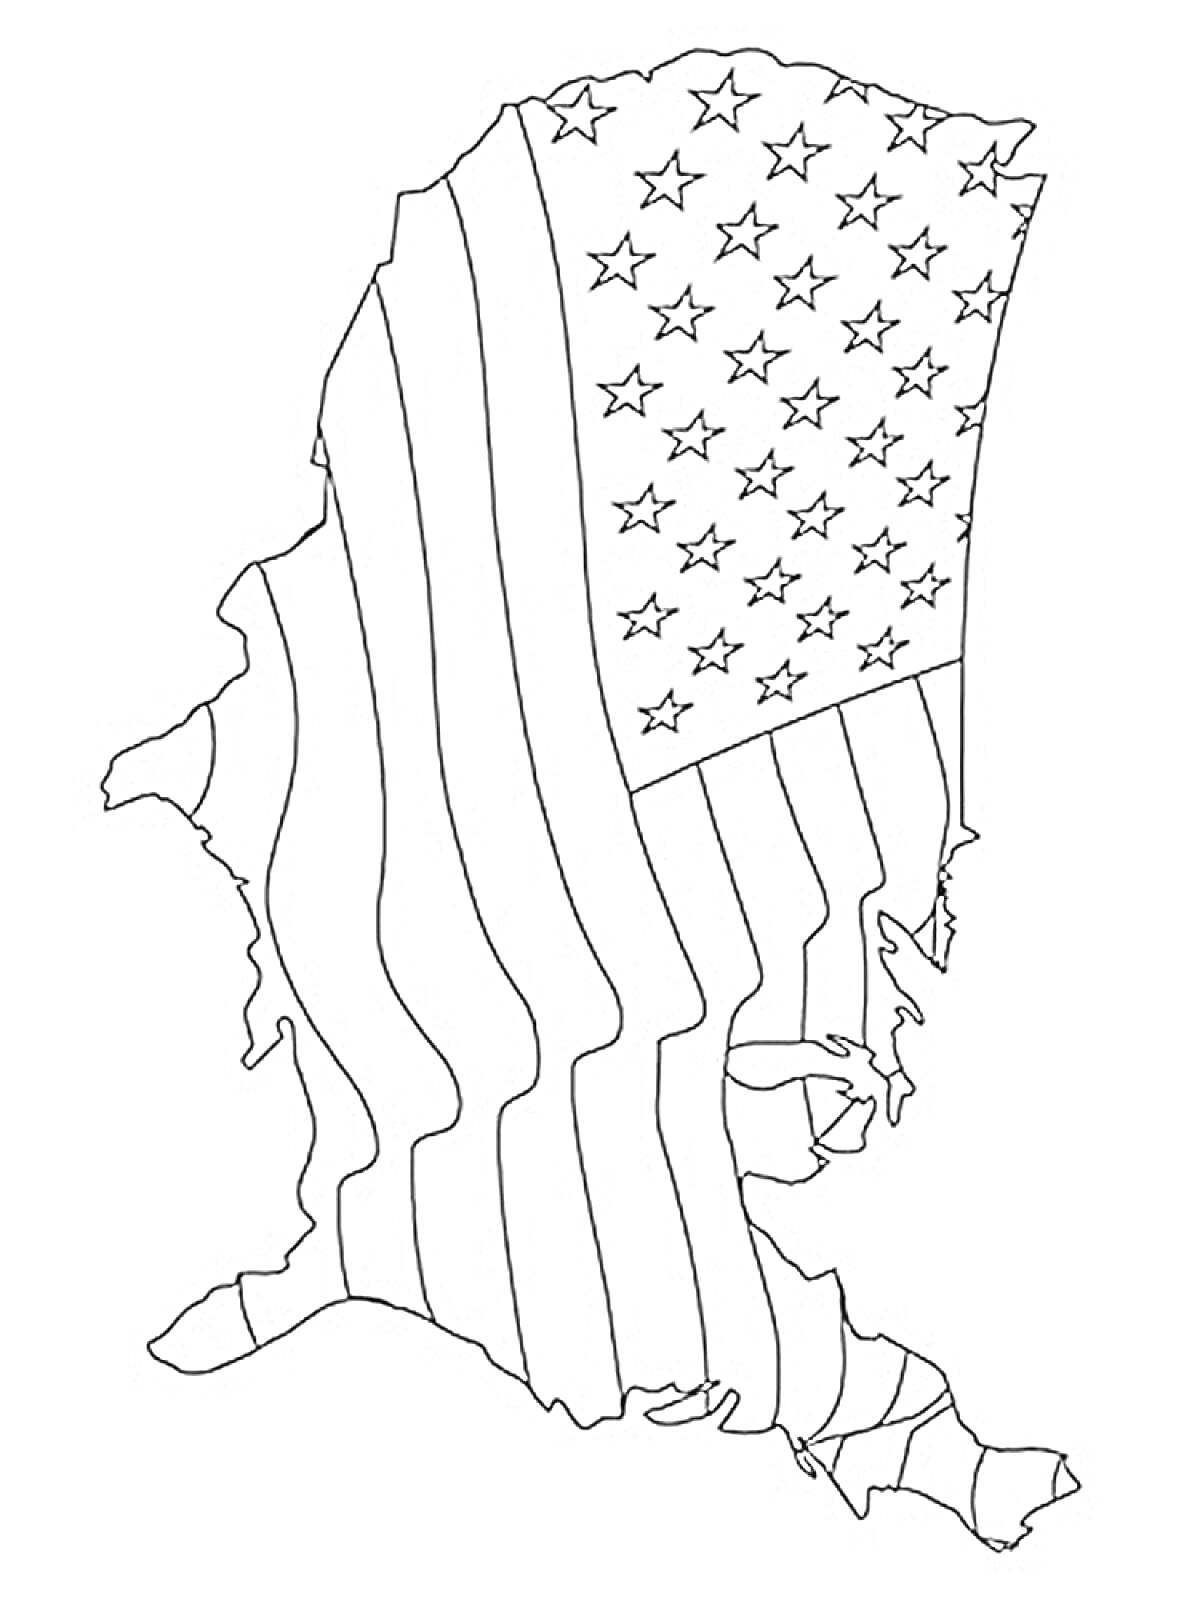 Контур карты Аляски с изображением флага США